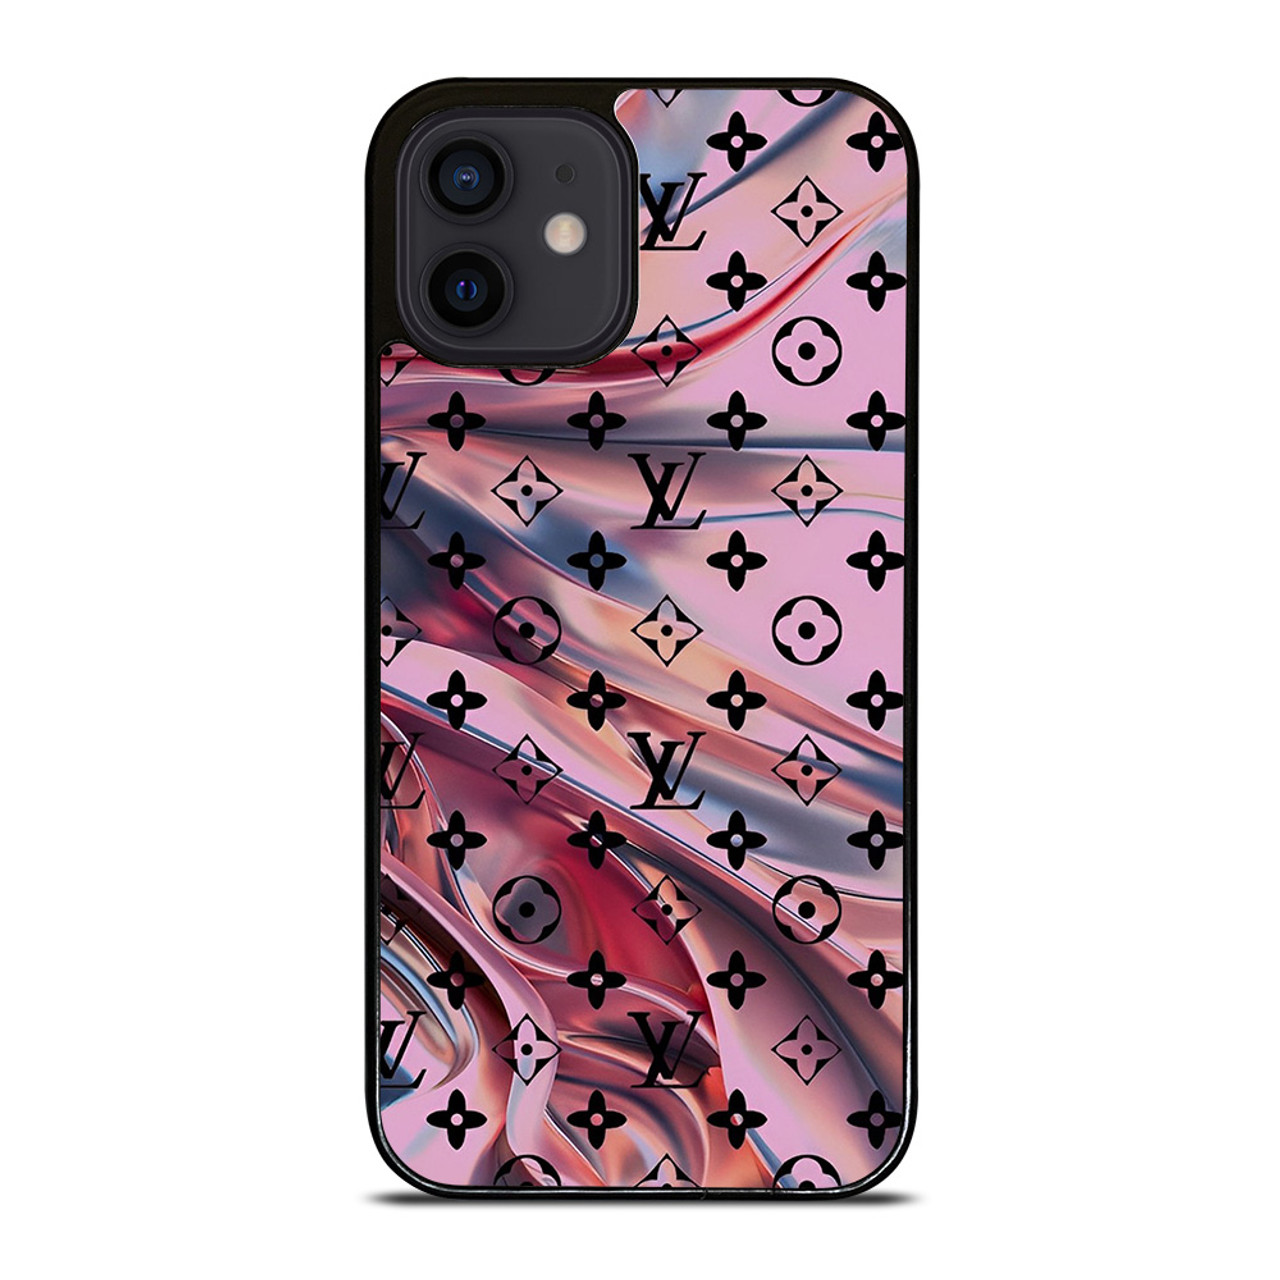 Louis Vuitton iPhone 11 pro case,LV iPhone 11 case